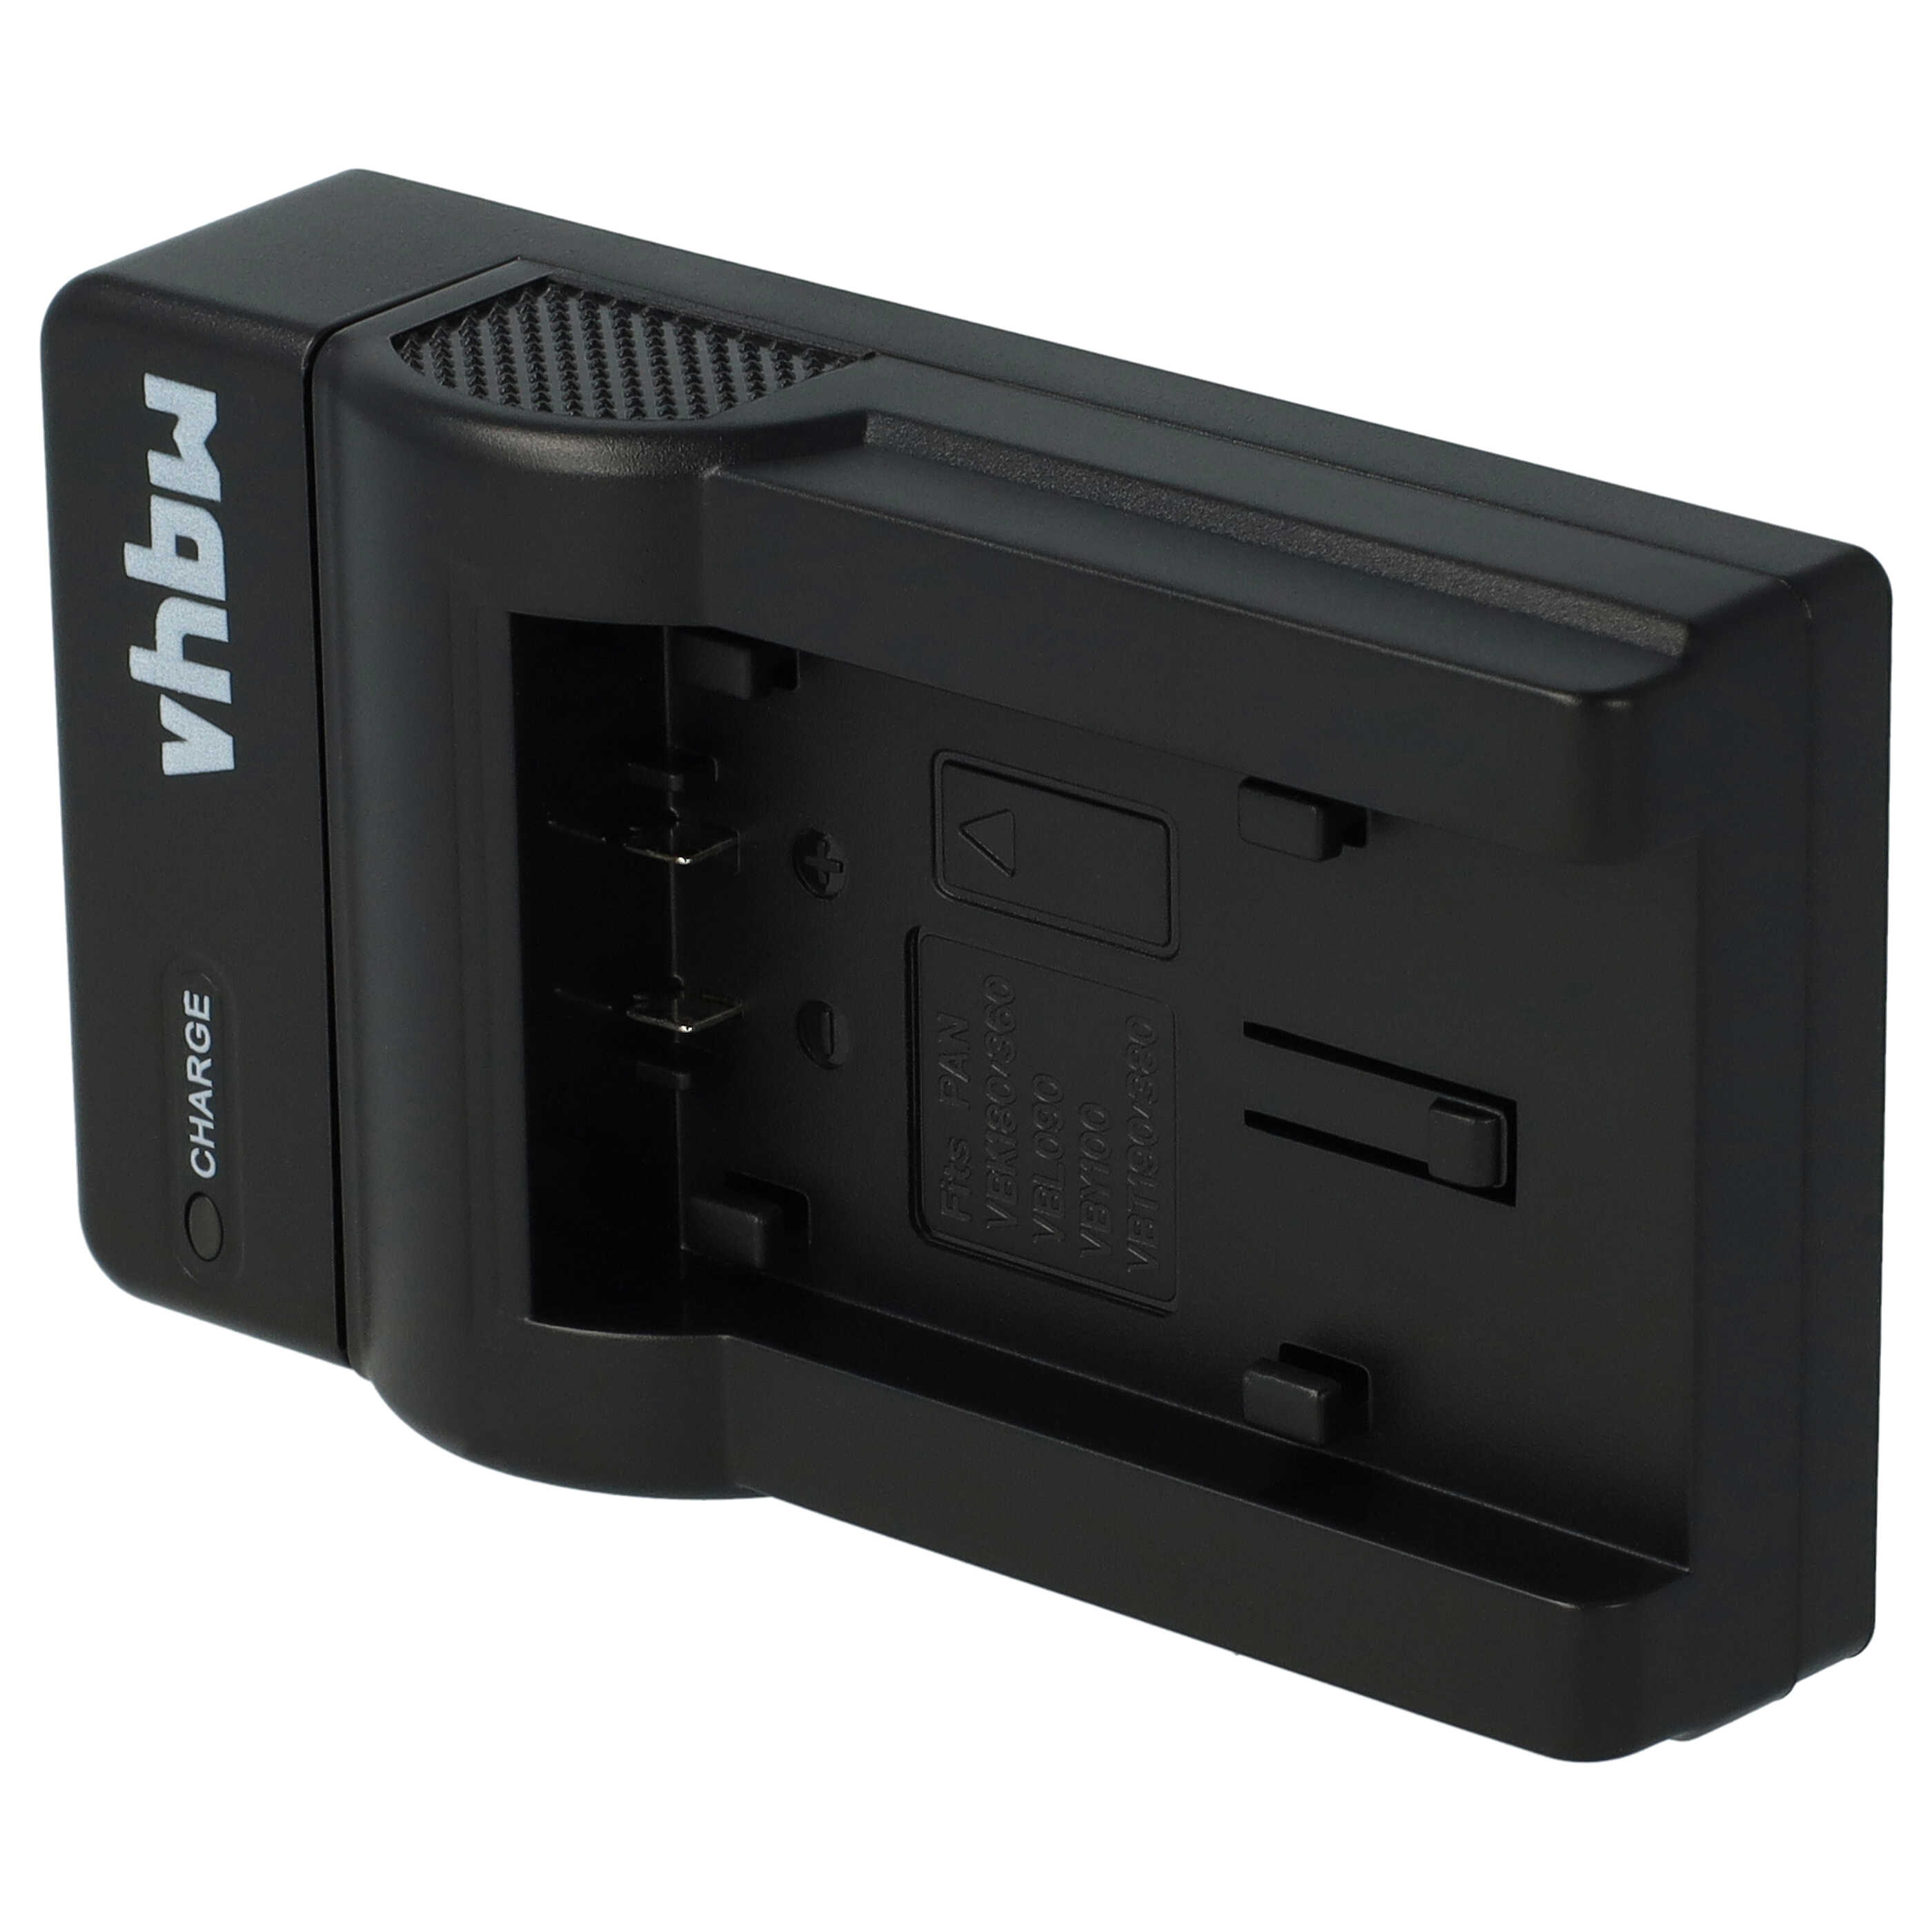 Akku Ladegerät passend für HC-V10 Kamera u.a. - 0,5 A, 4,2 V